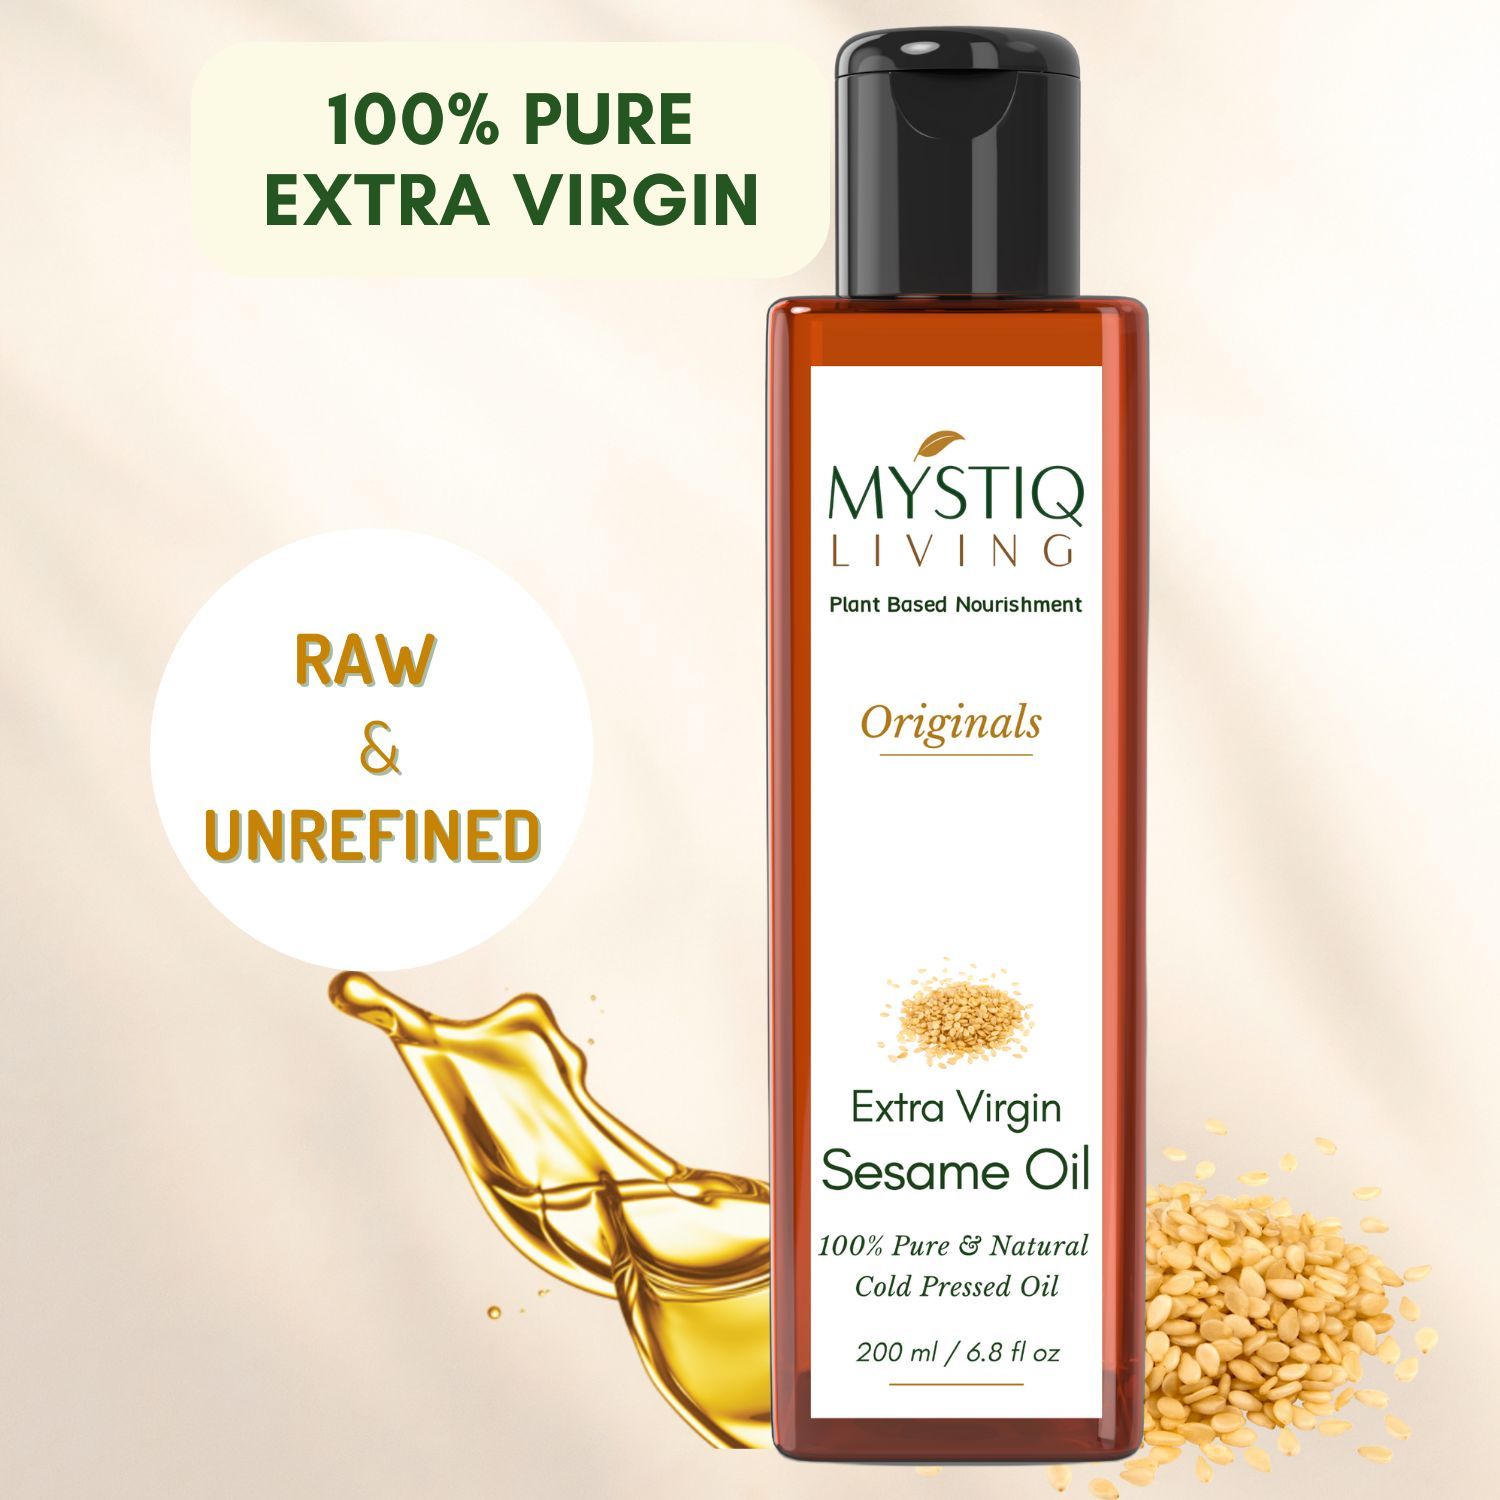 Buy Mystiq Living Sesame Oil (200 ml) Extra Virgin Sesame Oil For Skin, Hair, Body, Skin Care & Body Massage, 100% Organic Pure And Natural, Cold Pressed Sesame Oil, Sesame Hair Oil - Purplle